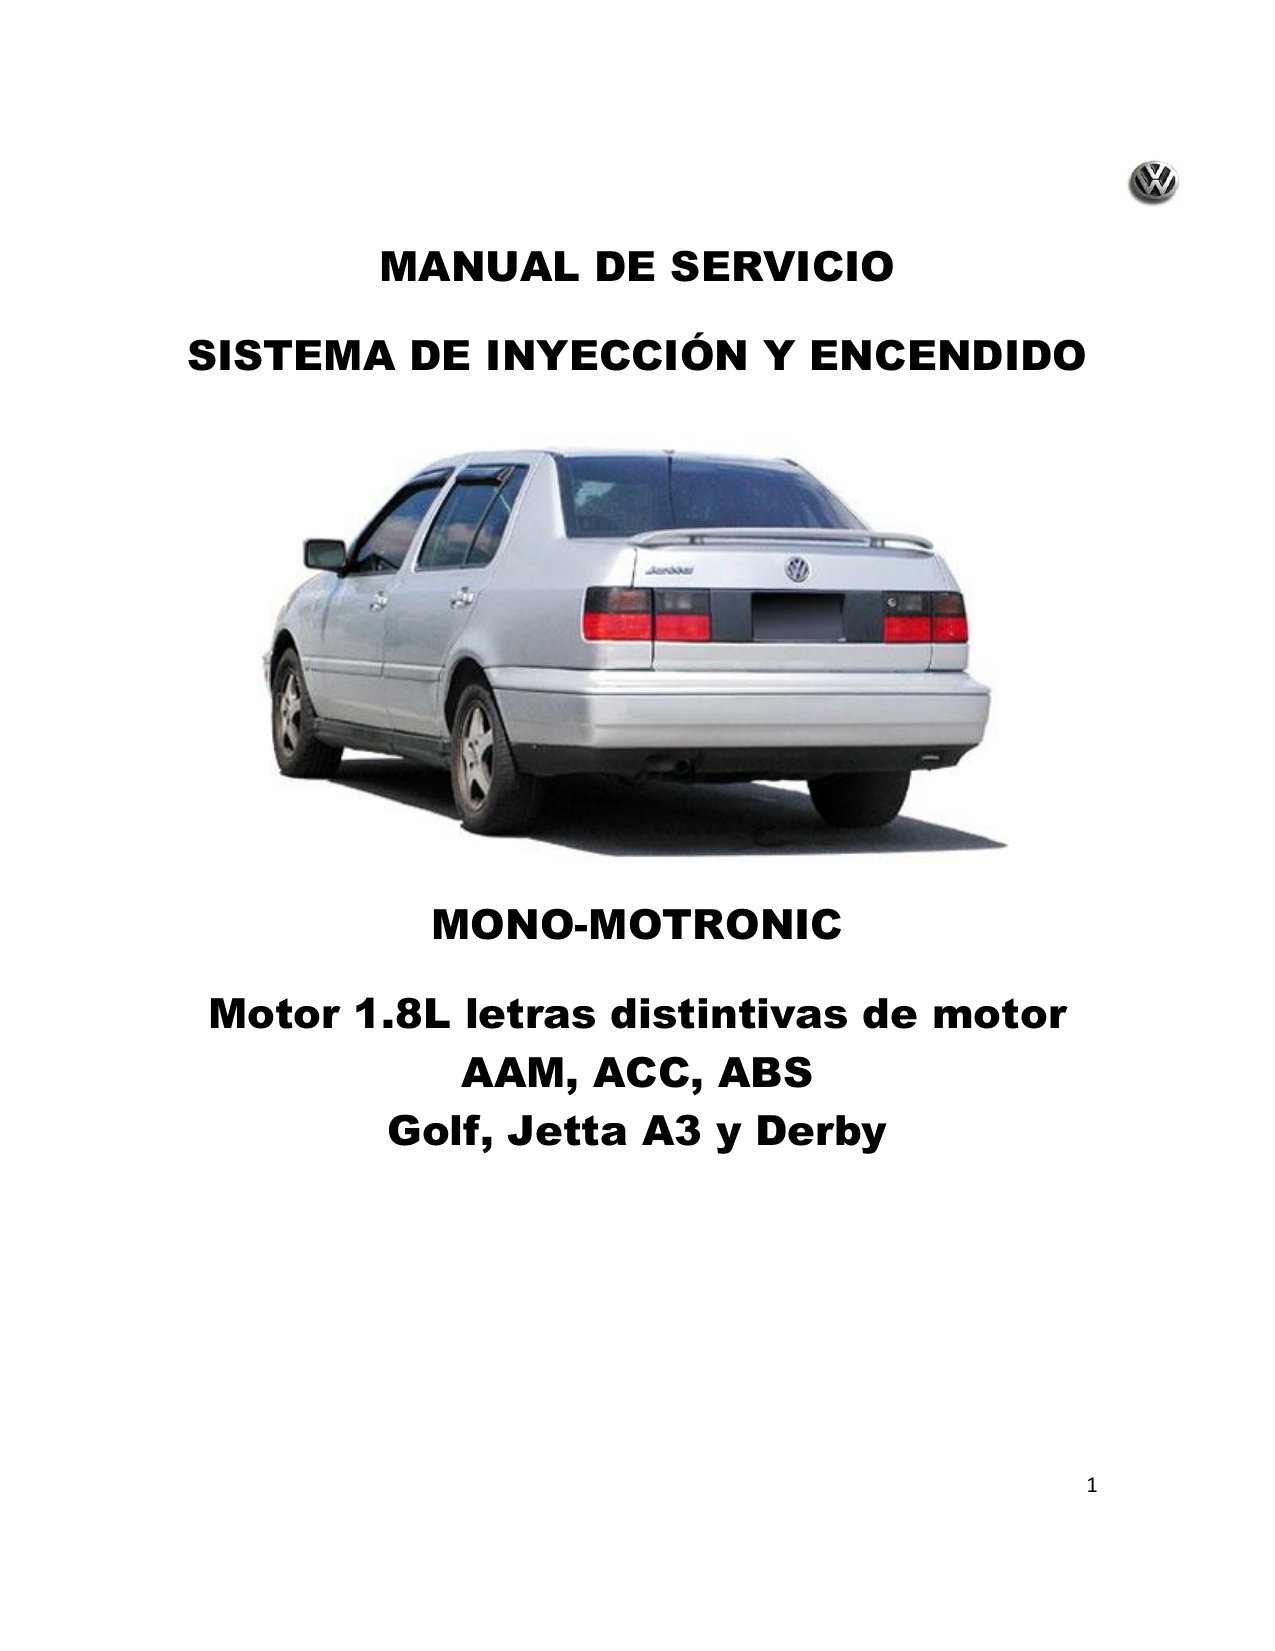 Manual-Inyeccion-Mono-Motronic-Golf-Jetta-y-Derby-A3